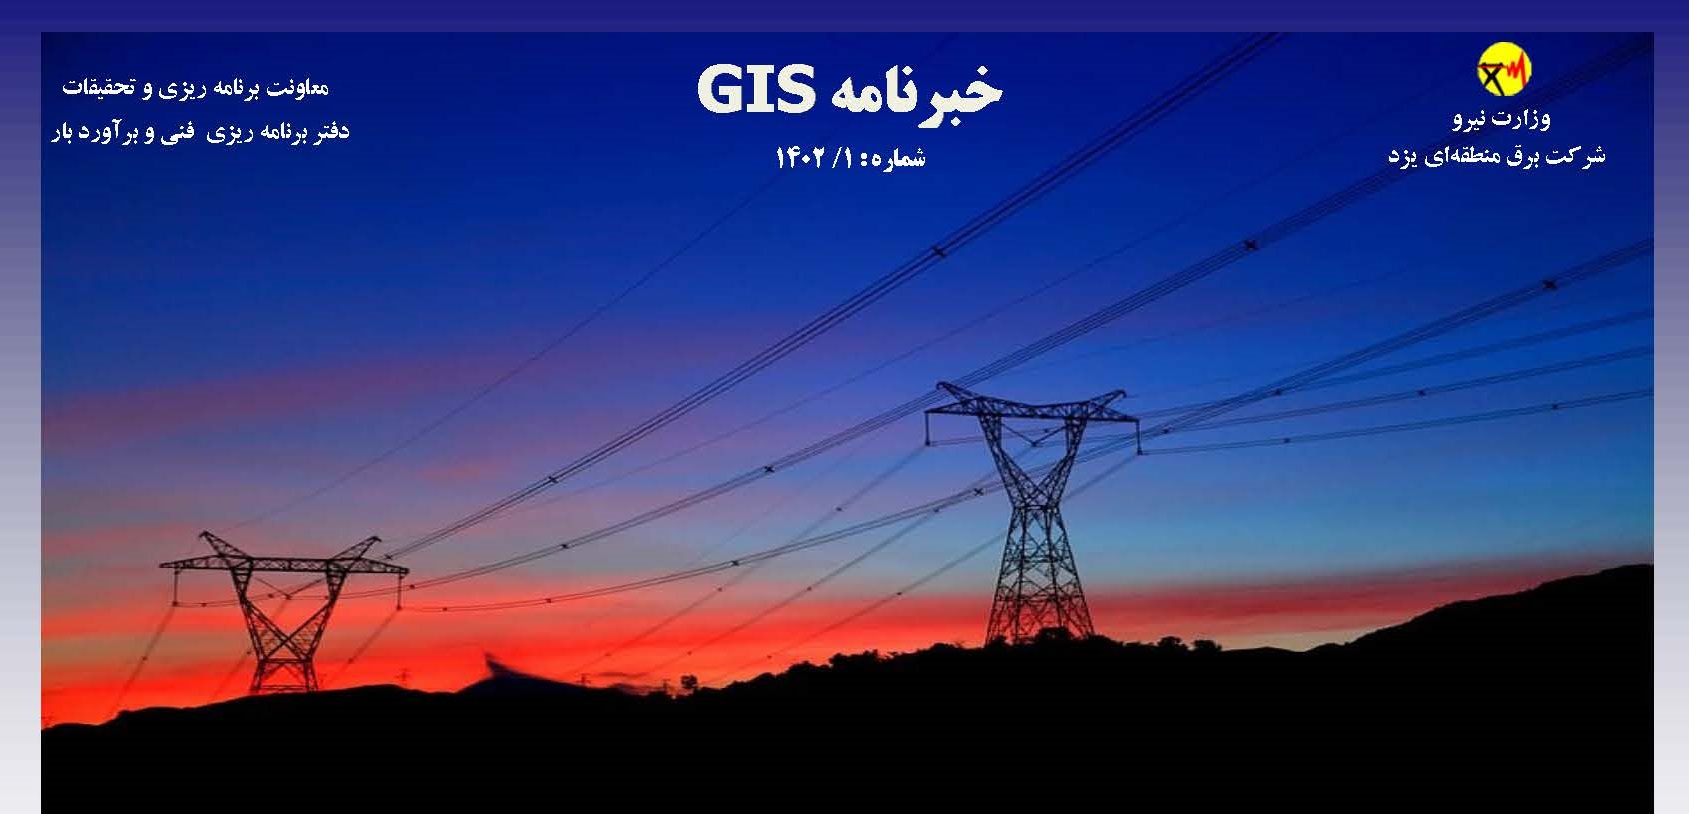 خبرنامه GIS شرکت برق منطقه ای یزد منتشر شد